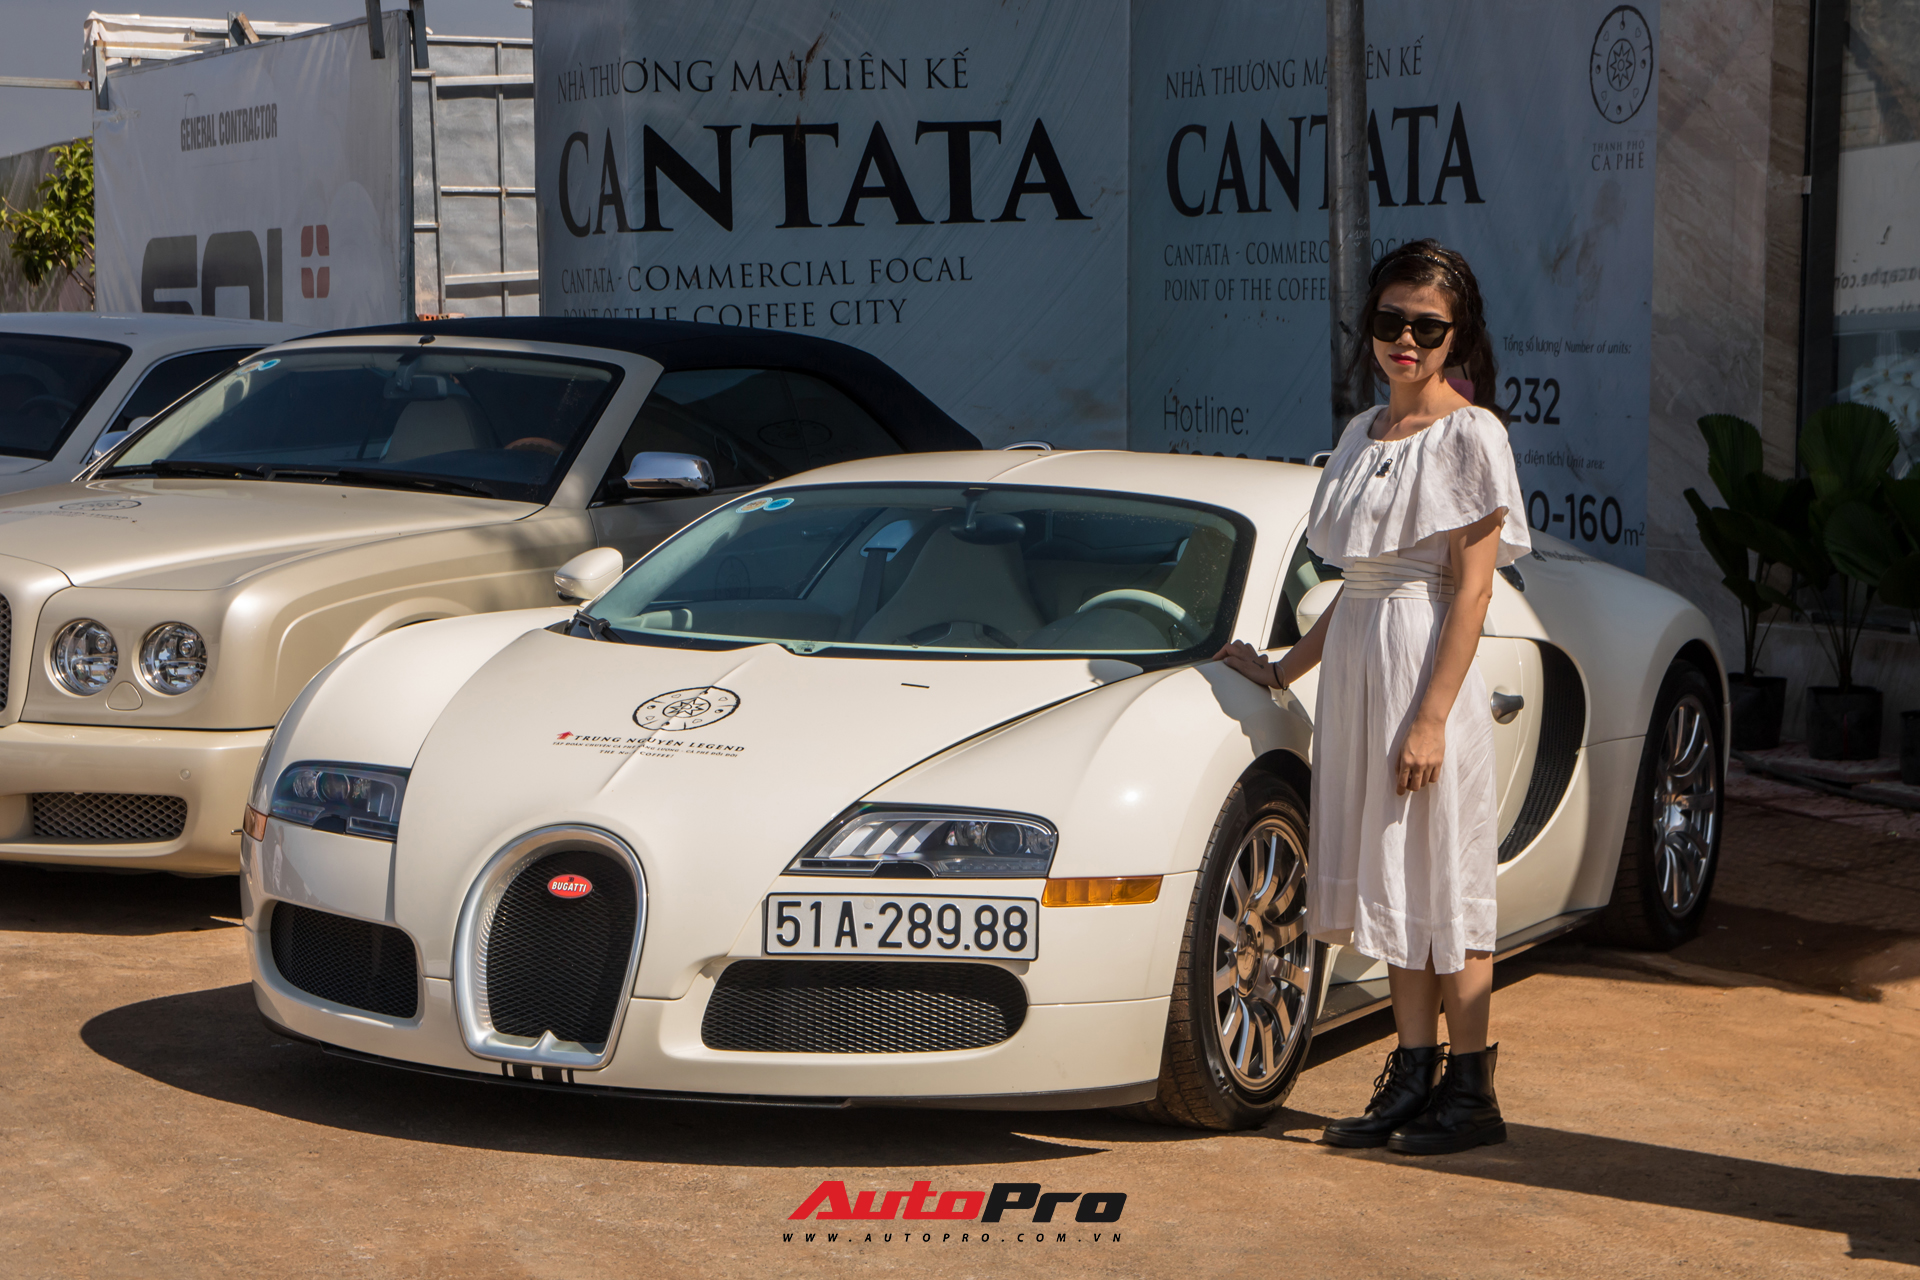 Phản ứng của người dân khi thấy dàn xe hơn 100 tỷ đồng của ông Đặng Lê Nguyên Vũ: Bugatti Veyron chiếm trọn spotlight - Ảnh 6.